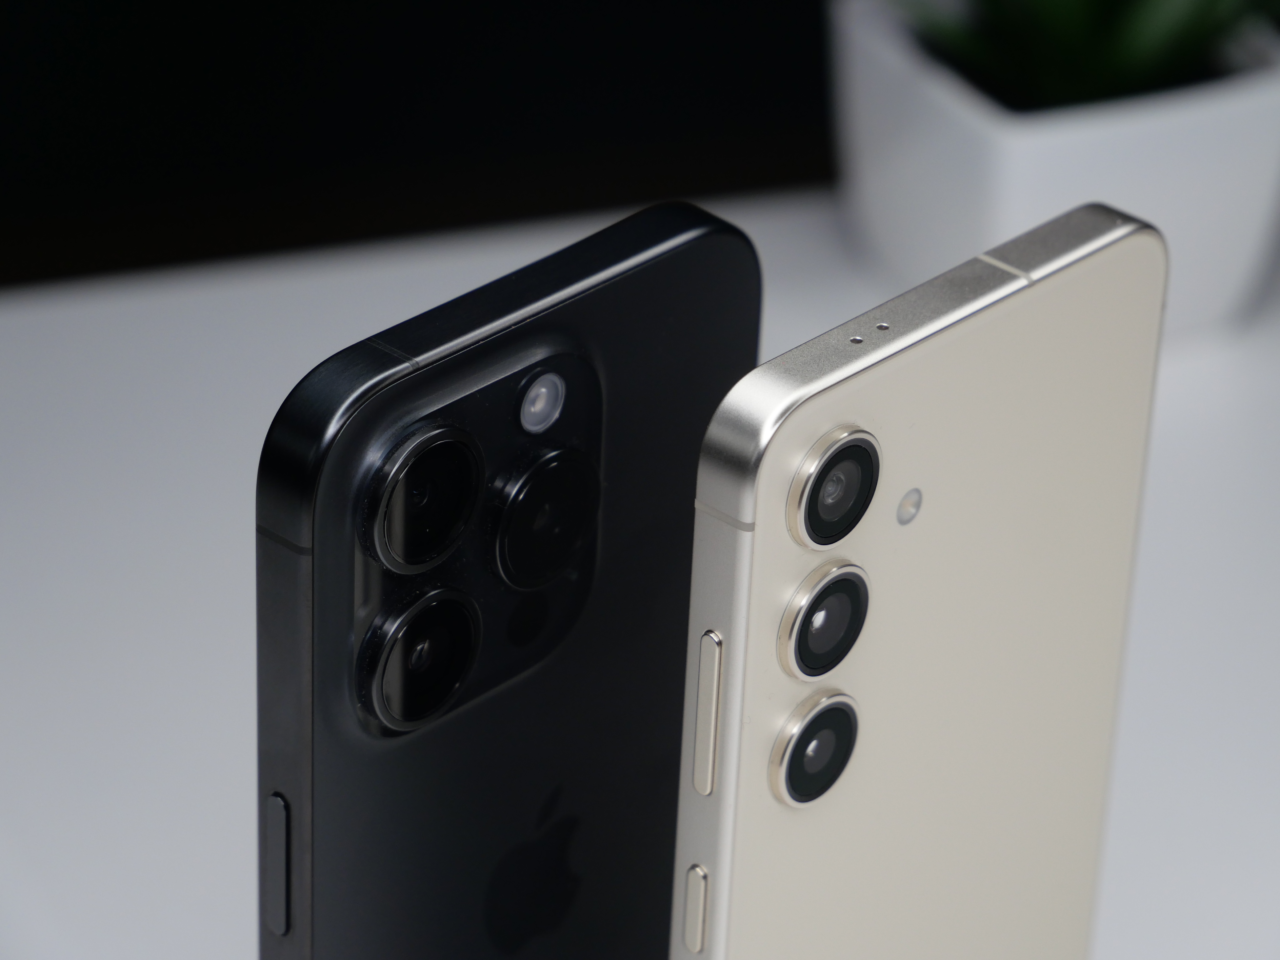 Dwa smartfony ustawione tyłem, jeden czarny, a drugi biały, pokazujące układy potrójnych aparatów fotograficznych.